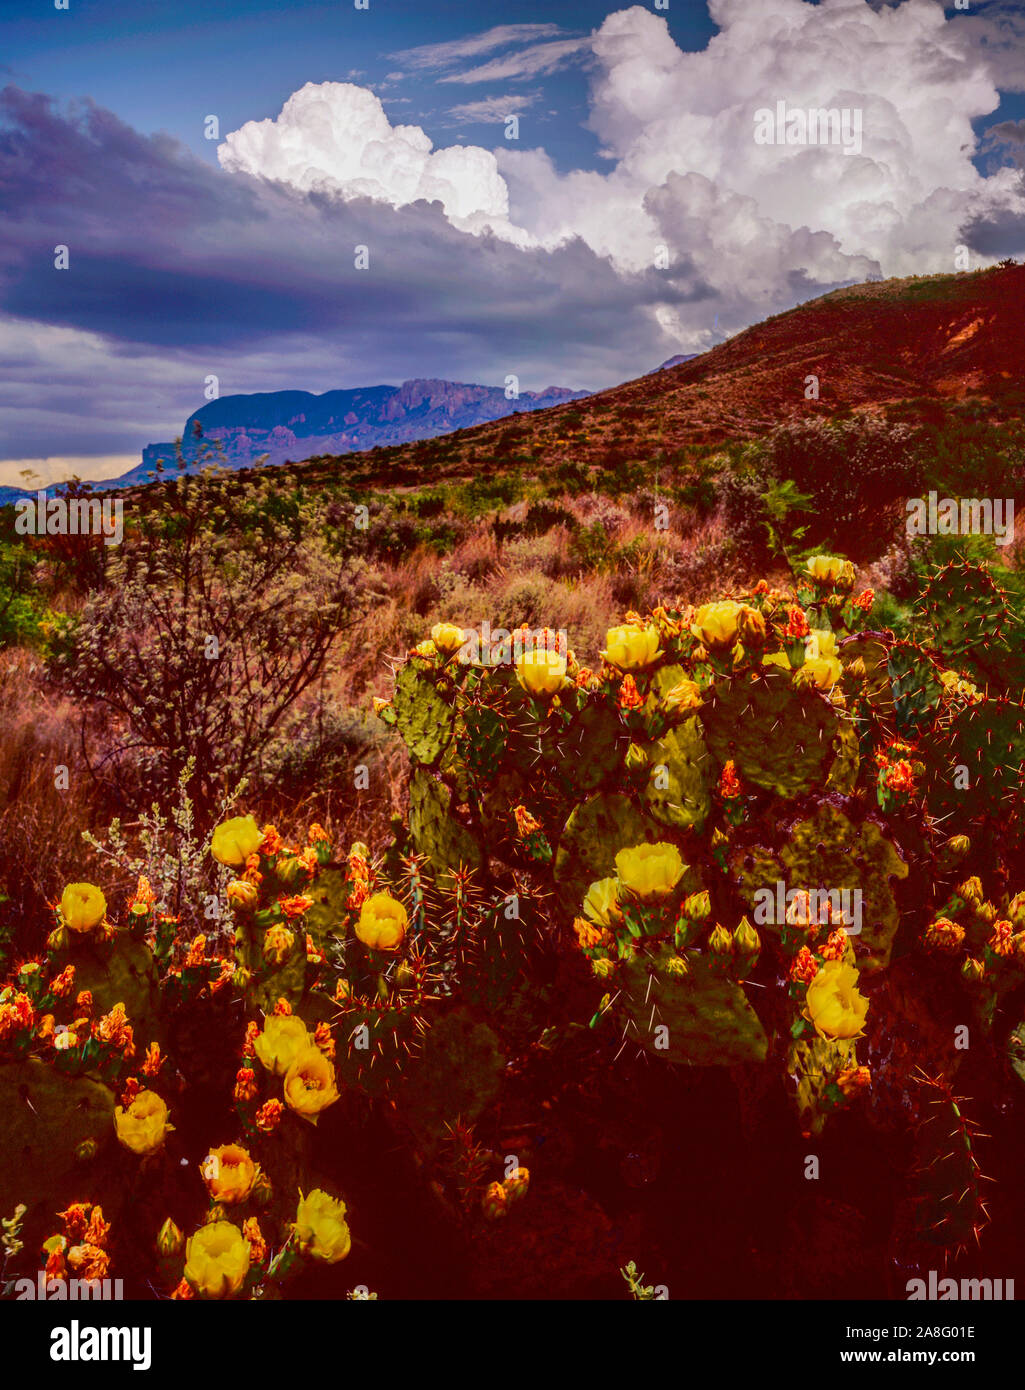 Nubes de tormenta y cactus, el Parque Nacional de Big Bend, Texas, nopal, Río Grande, Montañas Chisos Chihuahuan Desert Foto de stock